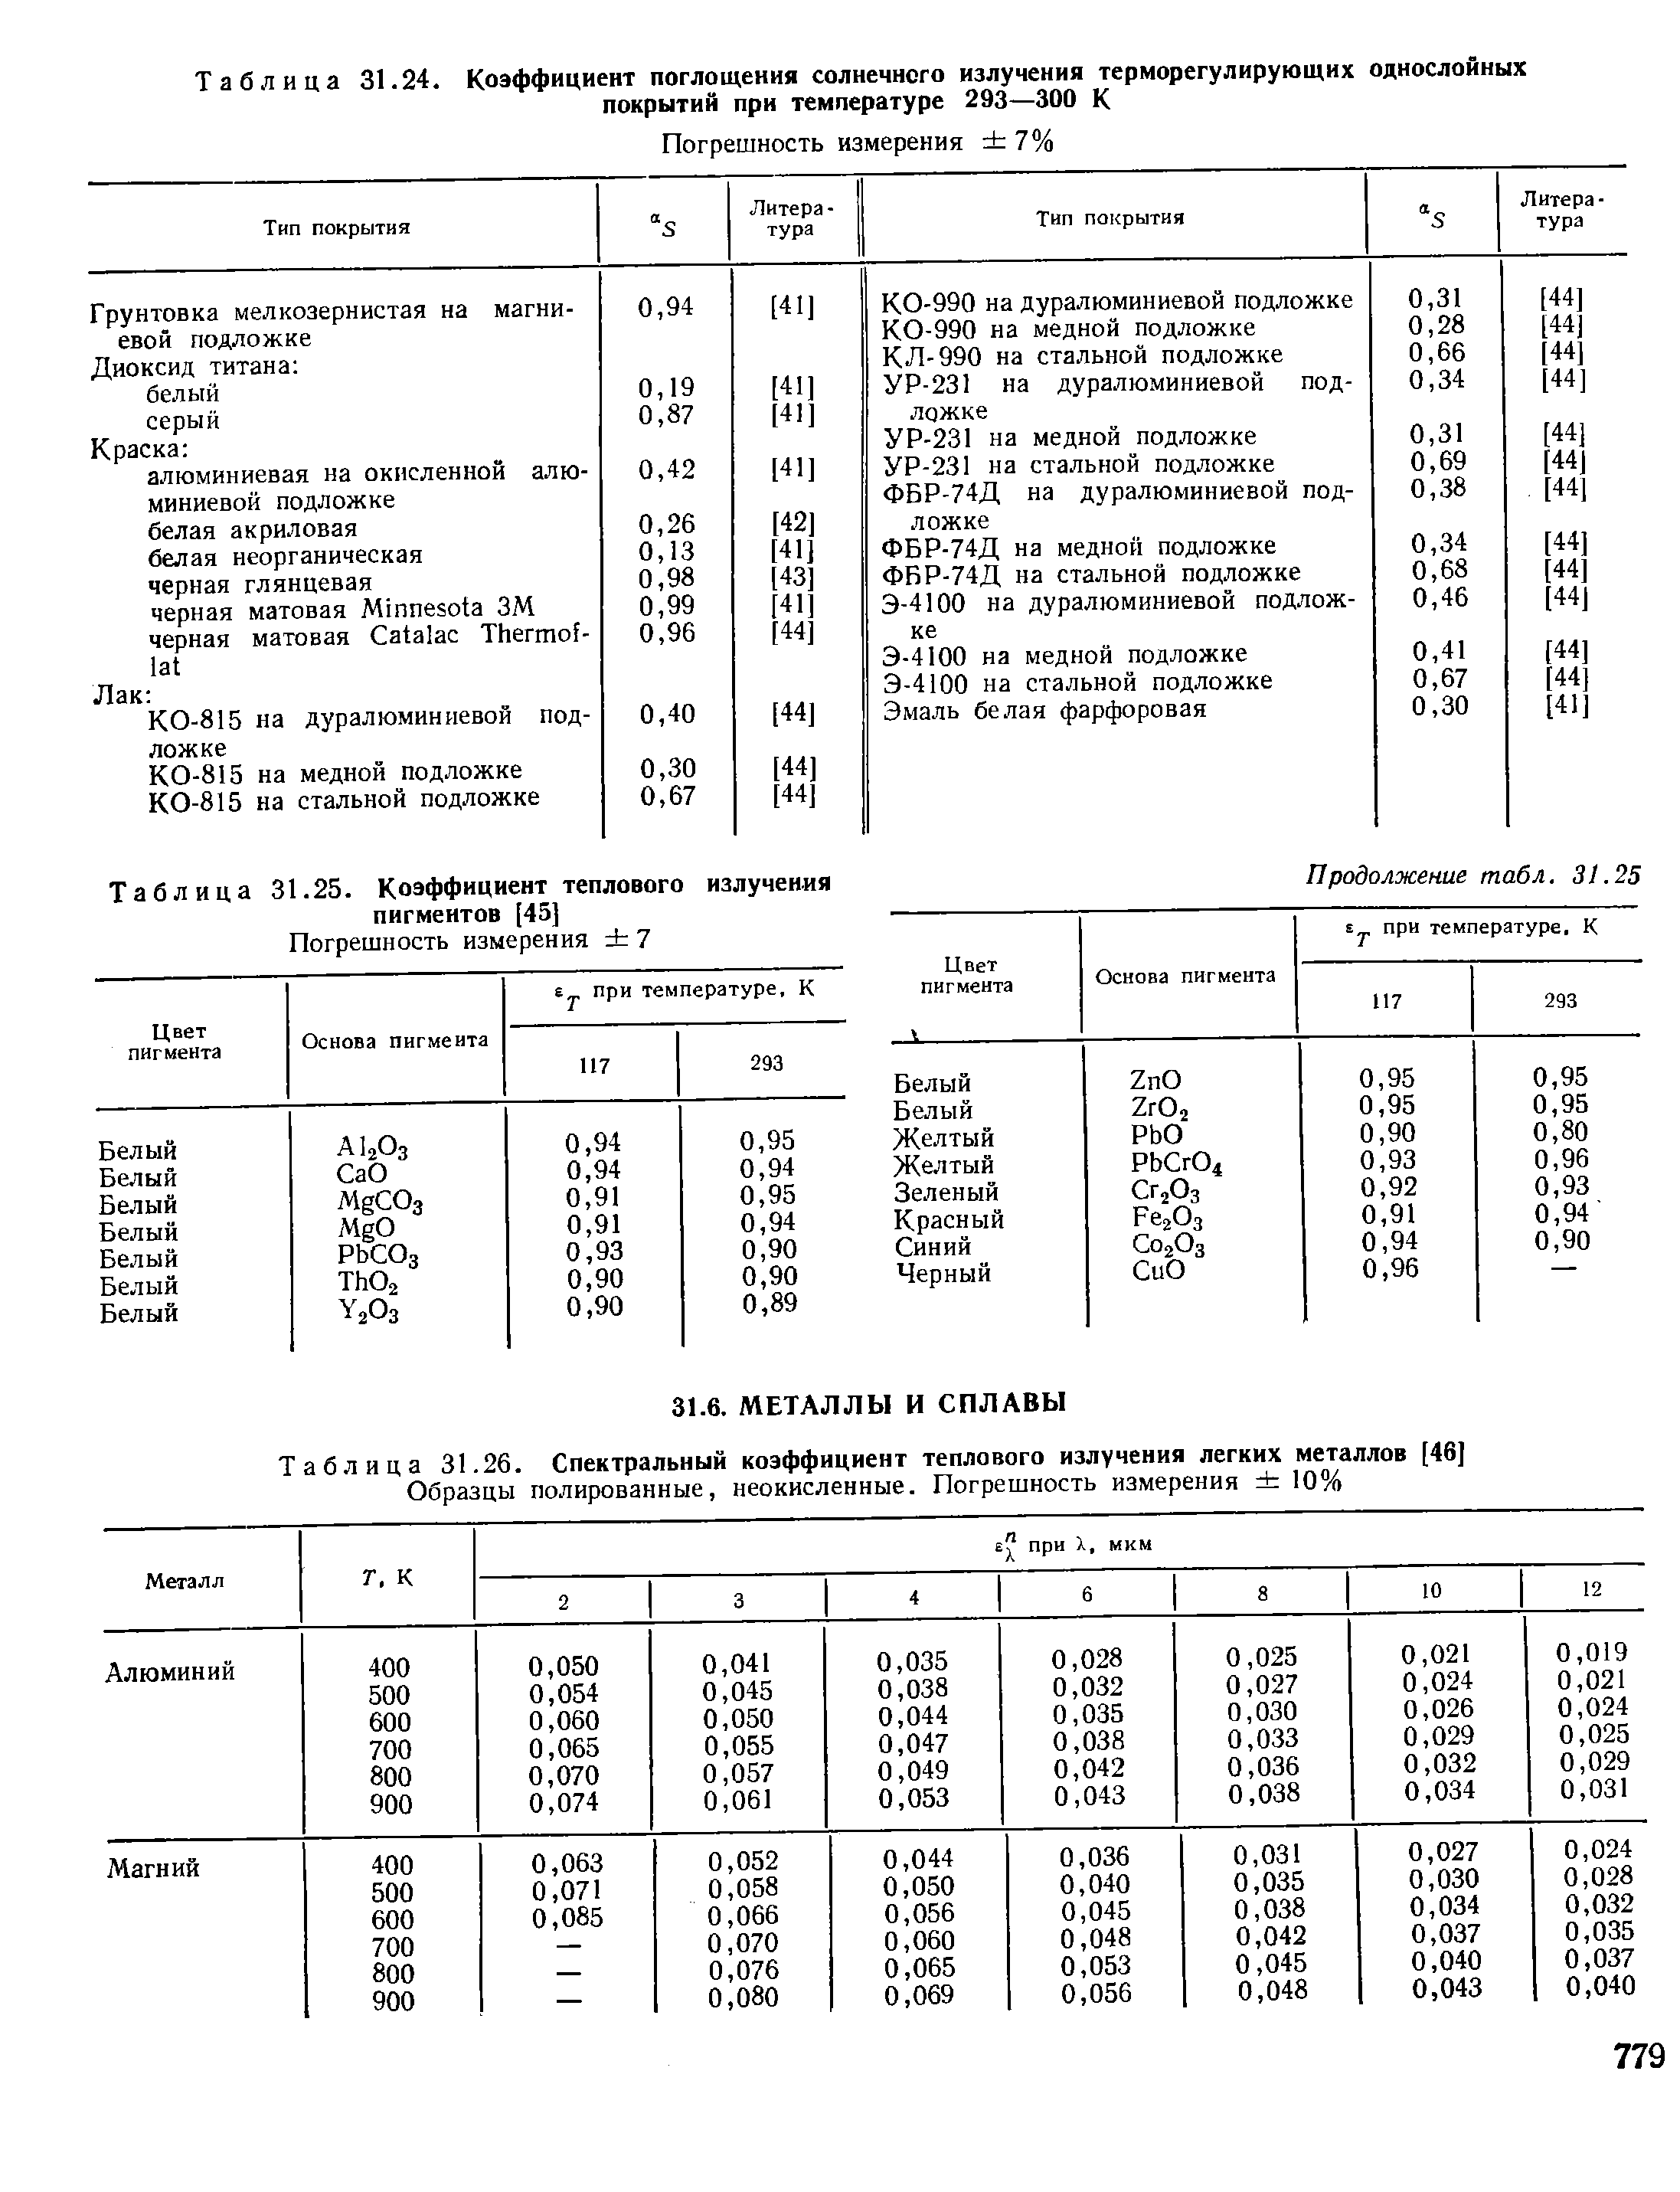 Таблица 31.25. Коэффициент теплового излучения пигментов [45]
